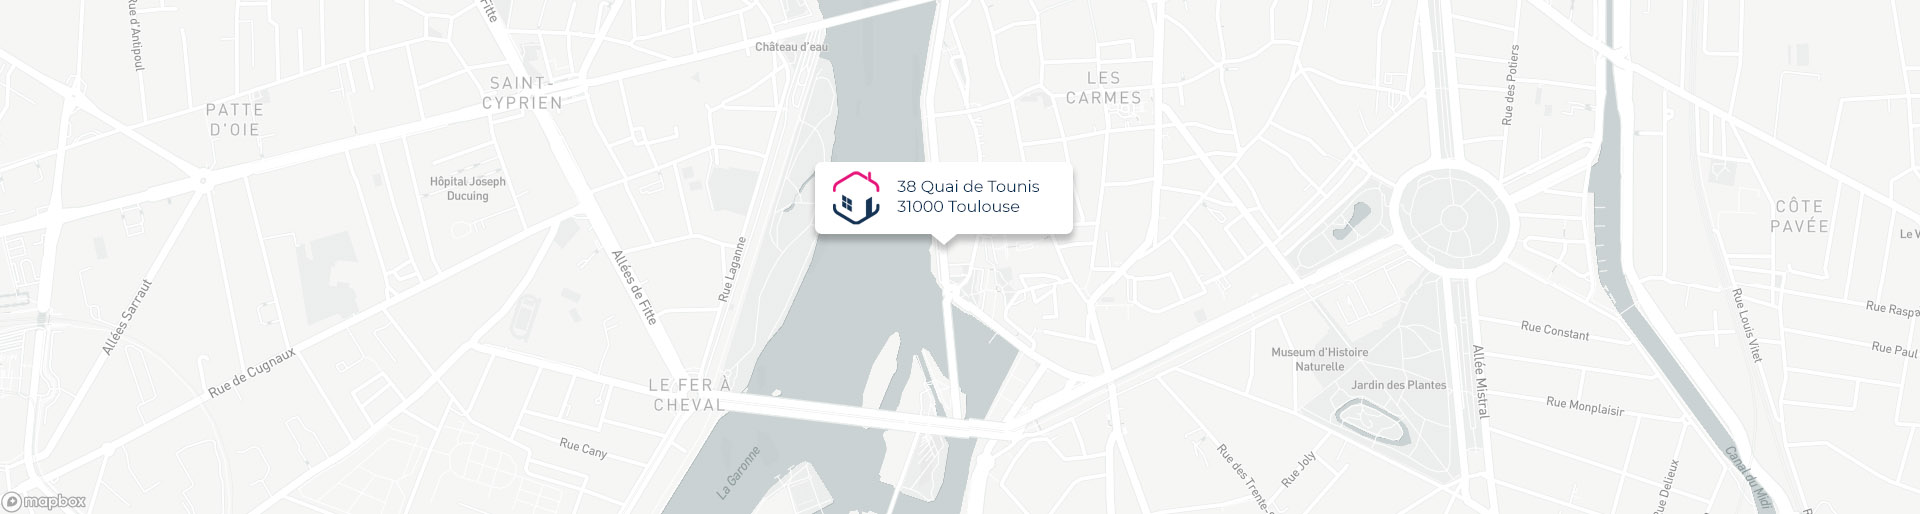 Plan de l'agence de Toulouse IMMO9 située 38, Quai de Tounis 31000 Toulouse tel: 0561217949